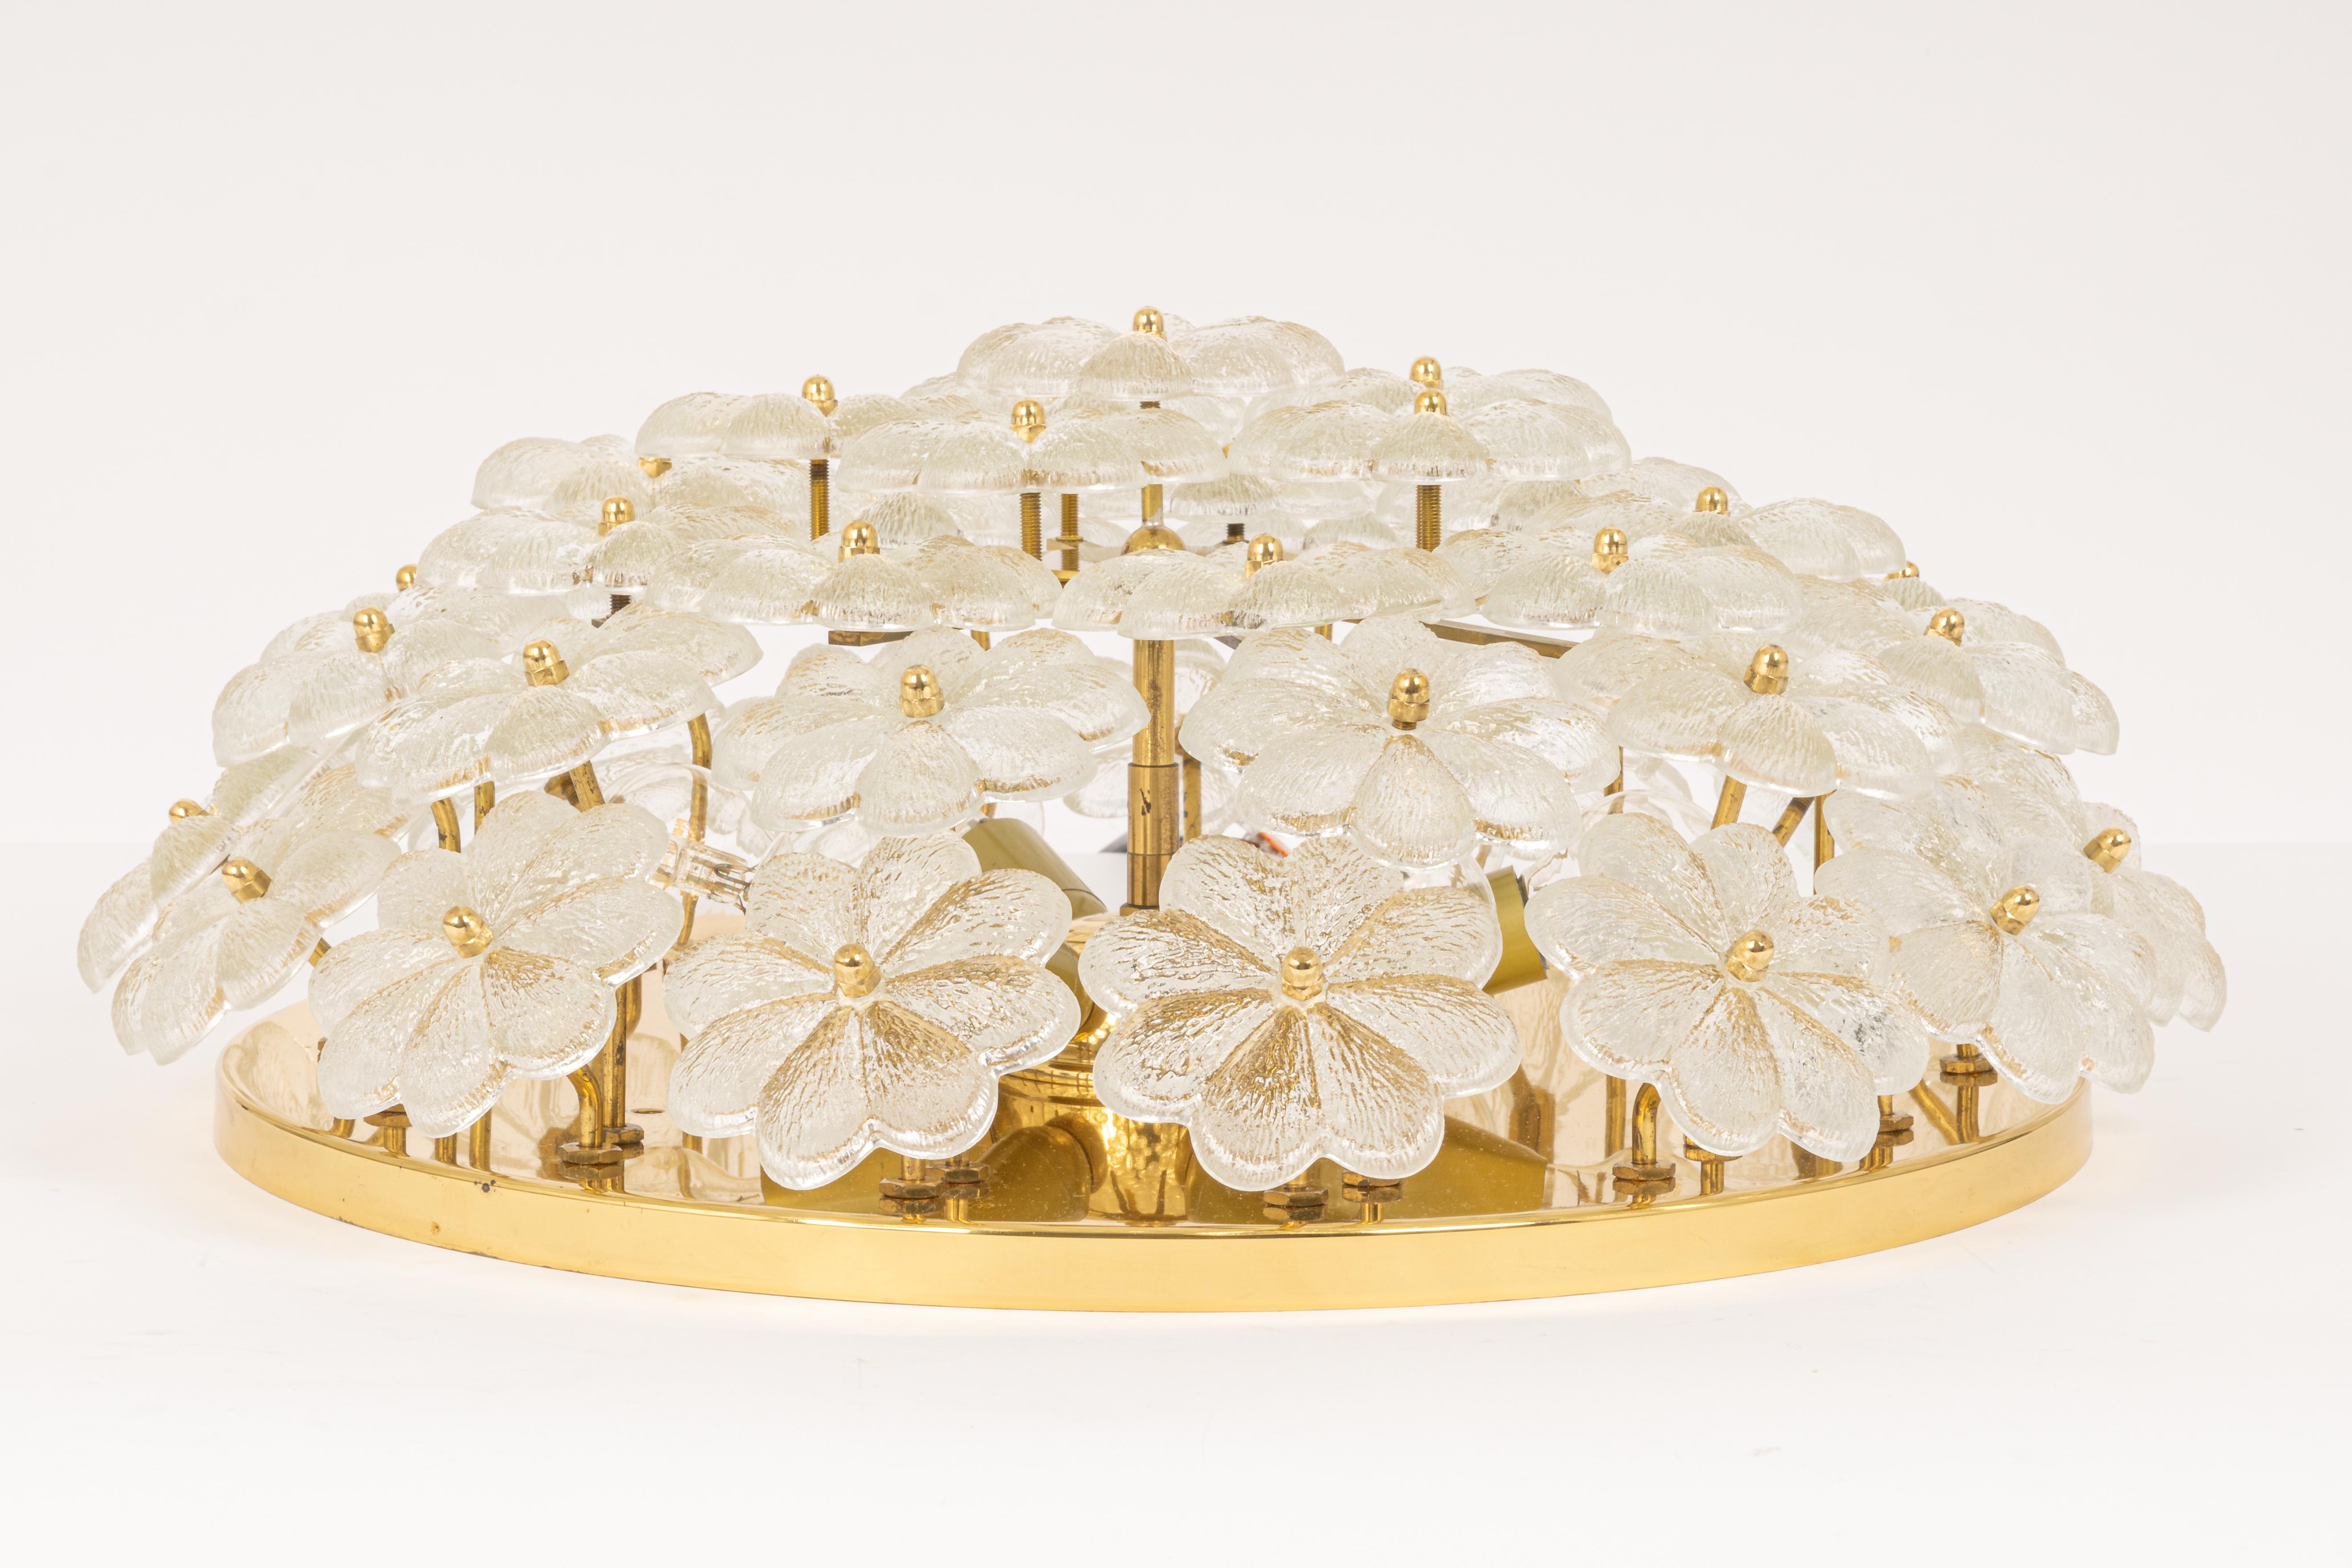 Leuchte aus der Mitte des Jahrhunderts mit 42 Blumen aus Murano-Glas auf einem Sockel aus poliertem Messing, hergestellt von Ernst Palme in Deutschland in den 1970er Jahren.

Hochwertig und in sehr gutem Zustand. Gereinigt, gut verkabelt und